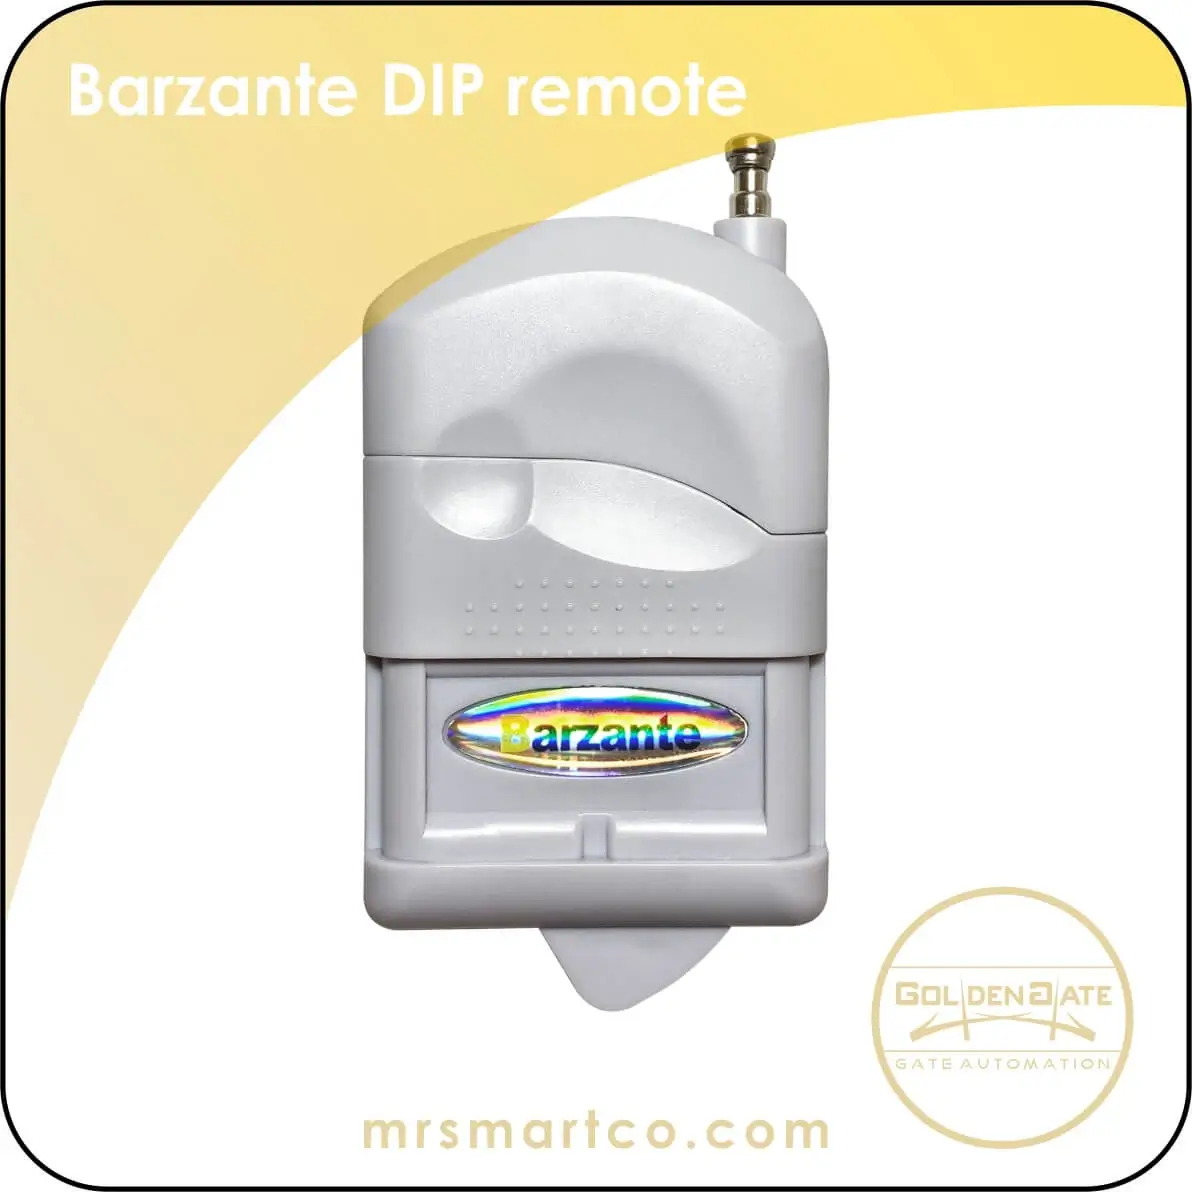 barzante DIP remote